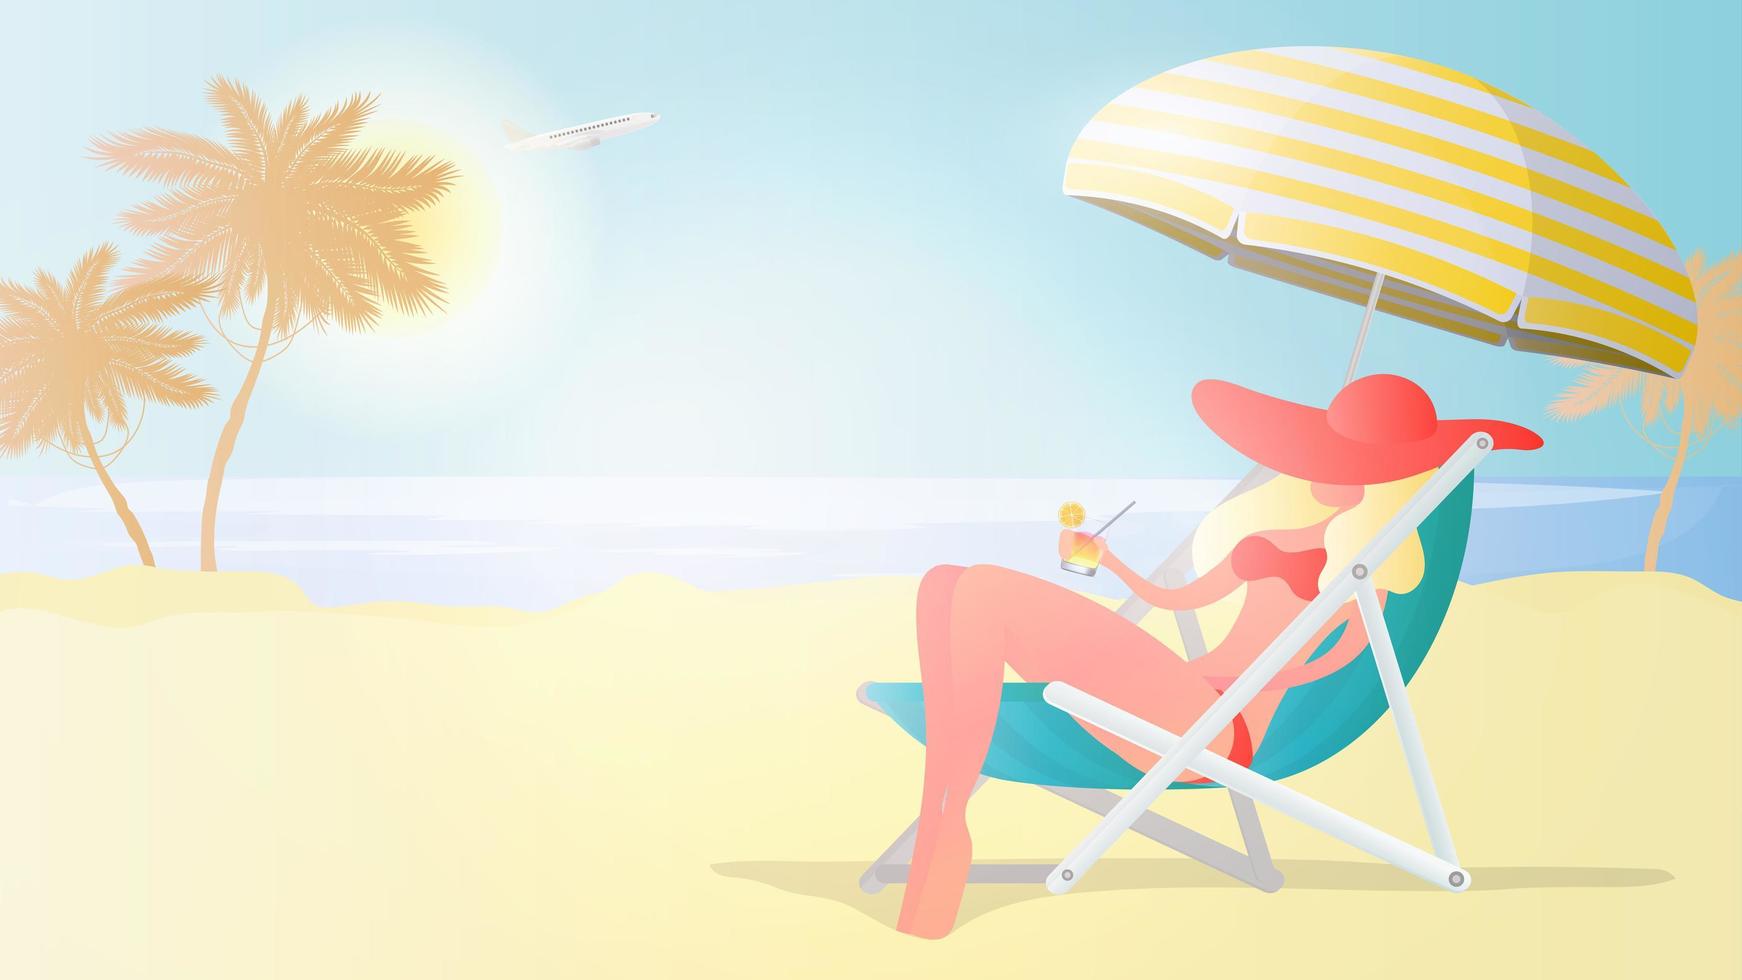 ragazza in costume da bagno che riposa sulla spiaggia. ragazza su una sedia a sdraio con un cocktail in mano. spiaggia, palme, cocktail, sdraio, ombrellone. illustrazione vettoriale